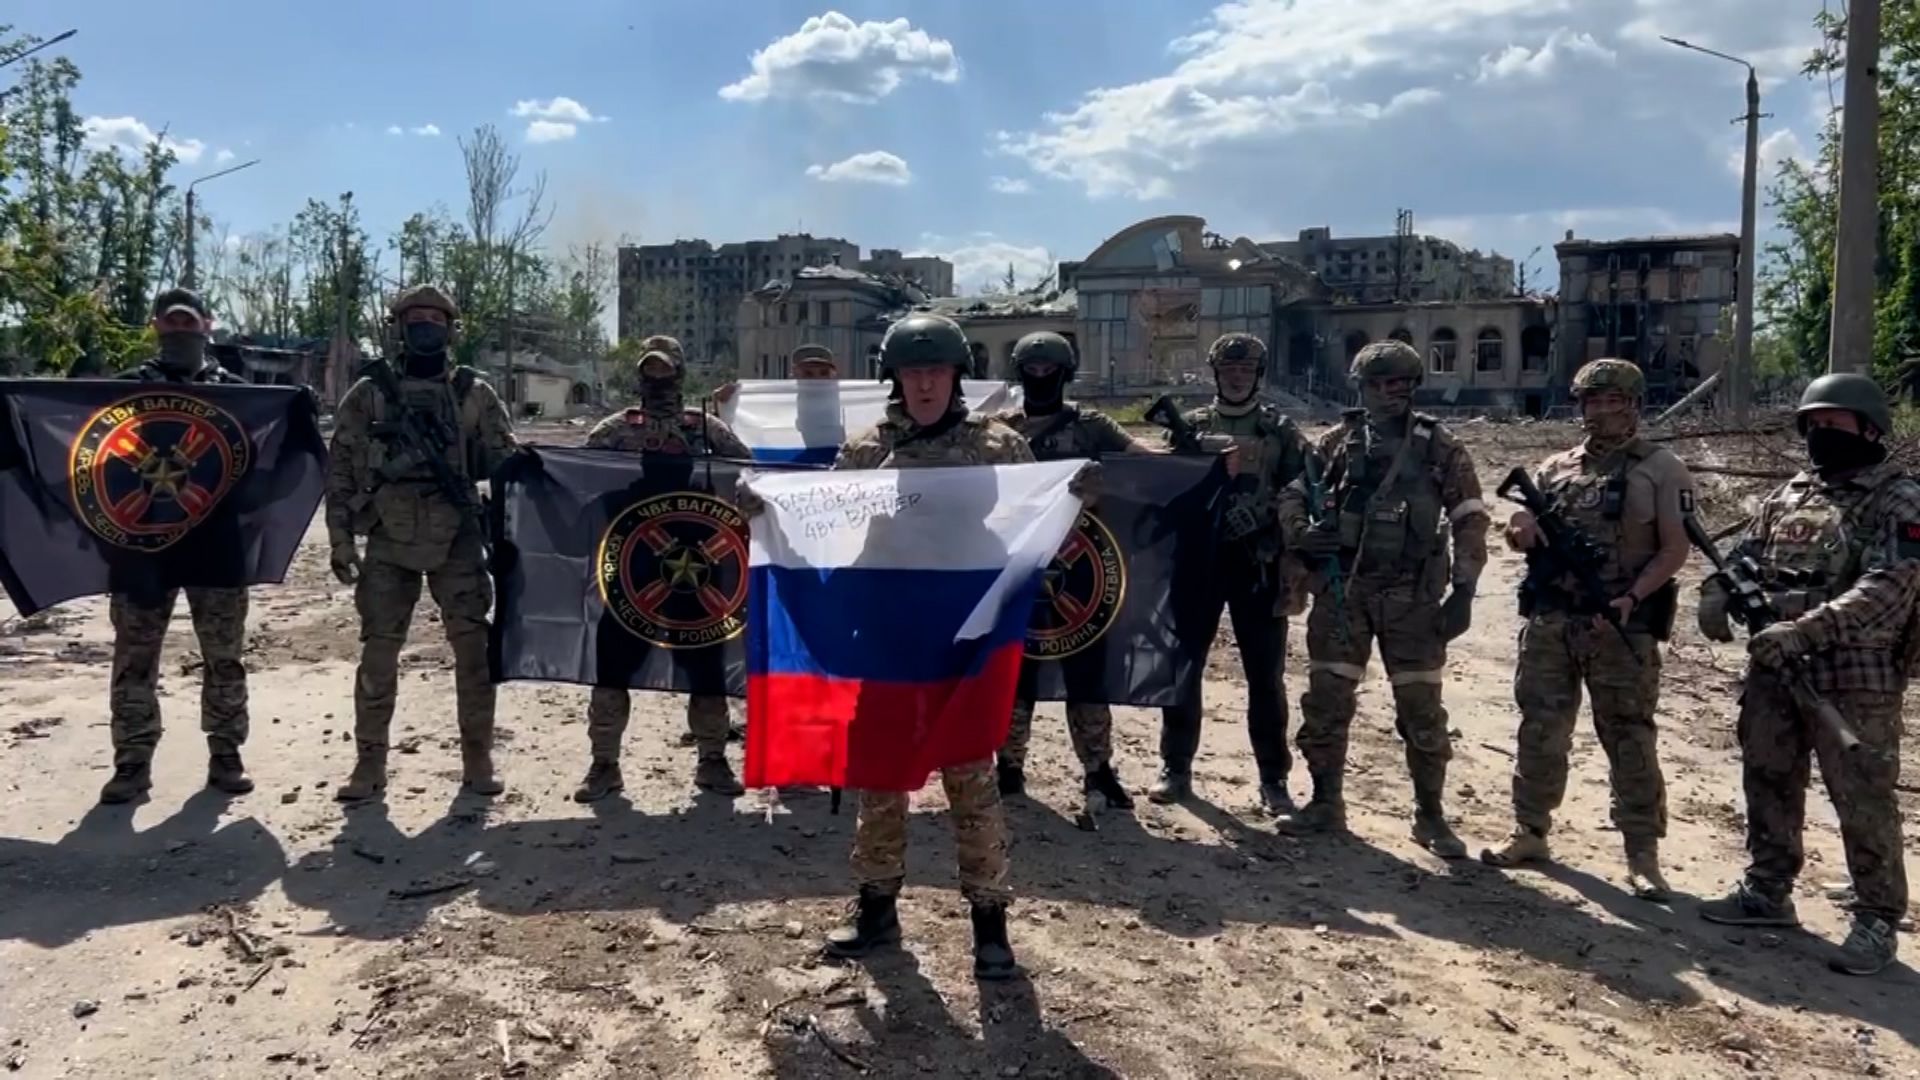 Βίντεο: Ουκρανός στρατηγός «εμψυχώνει» τους άντρες του στο Μπάκχμουτ – «Μη φοβάστε γιατί οι μονάδες της Βάγκνερ έχουν αποσυρθεί»